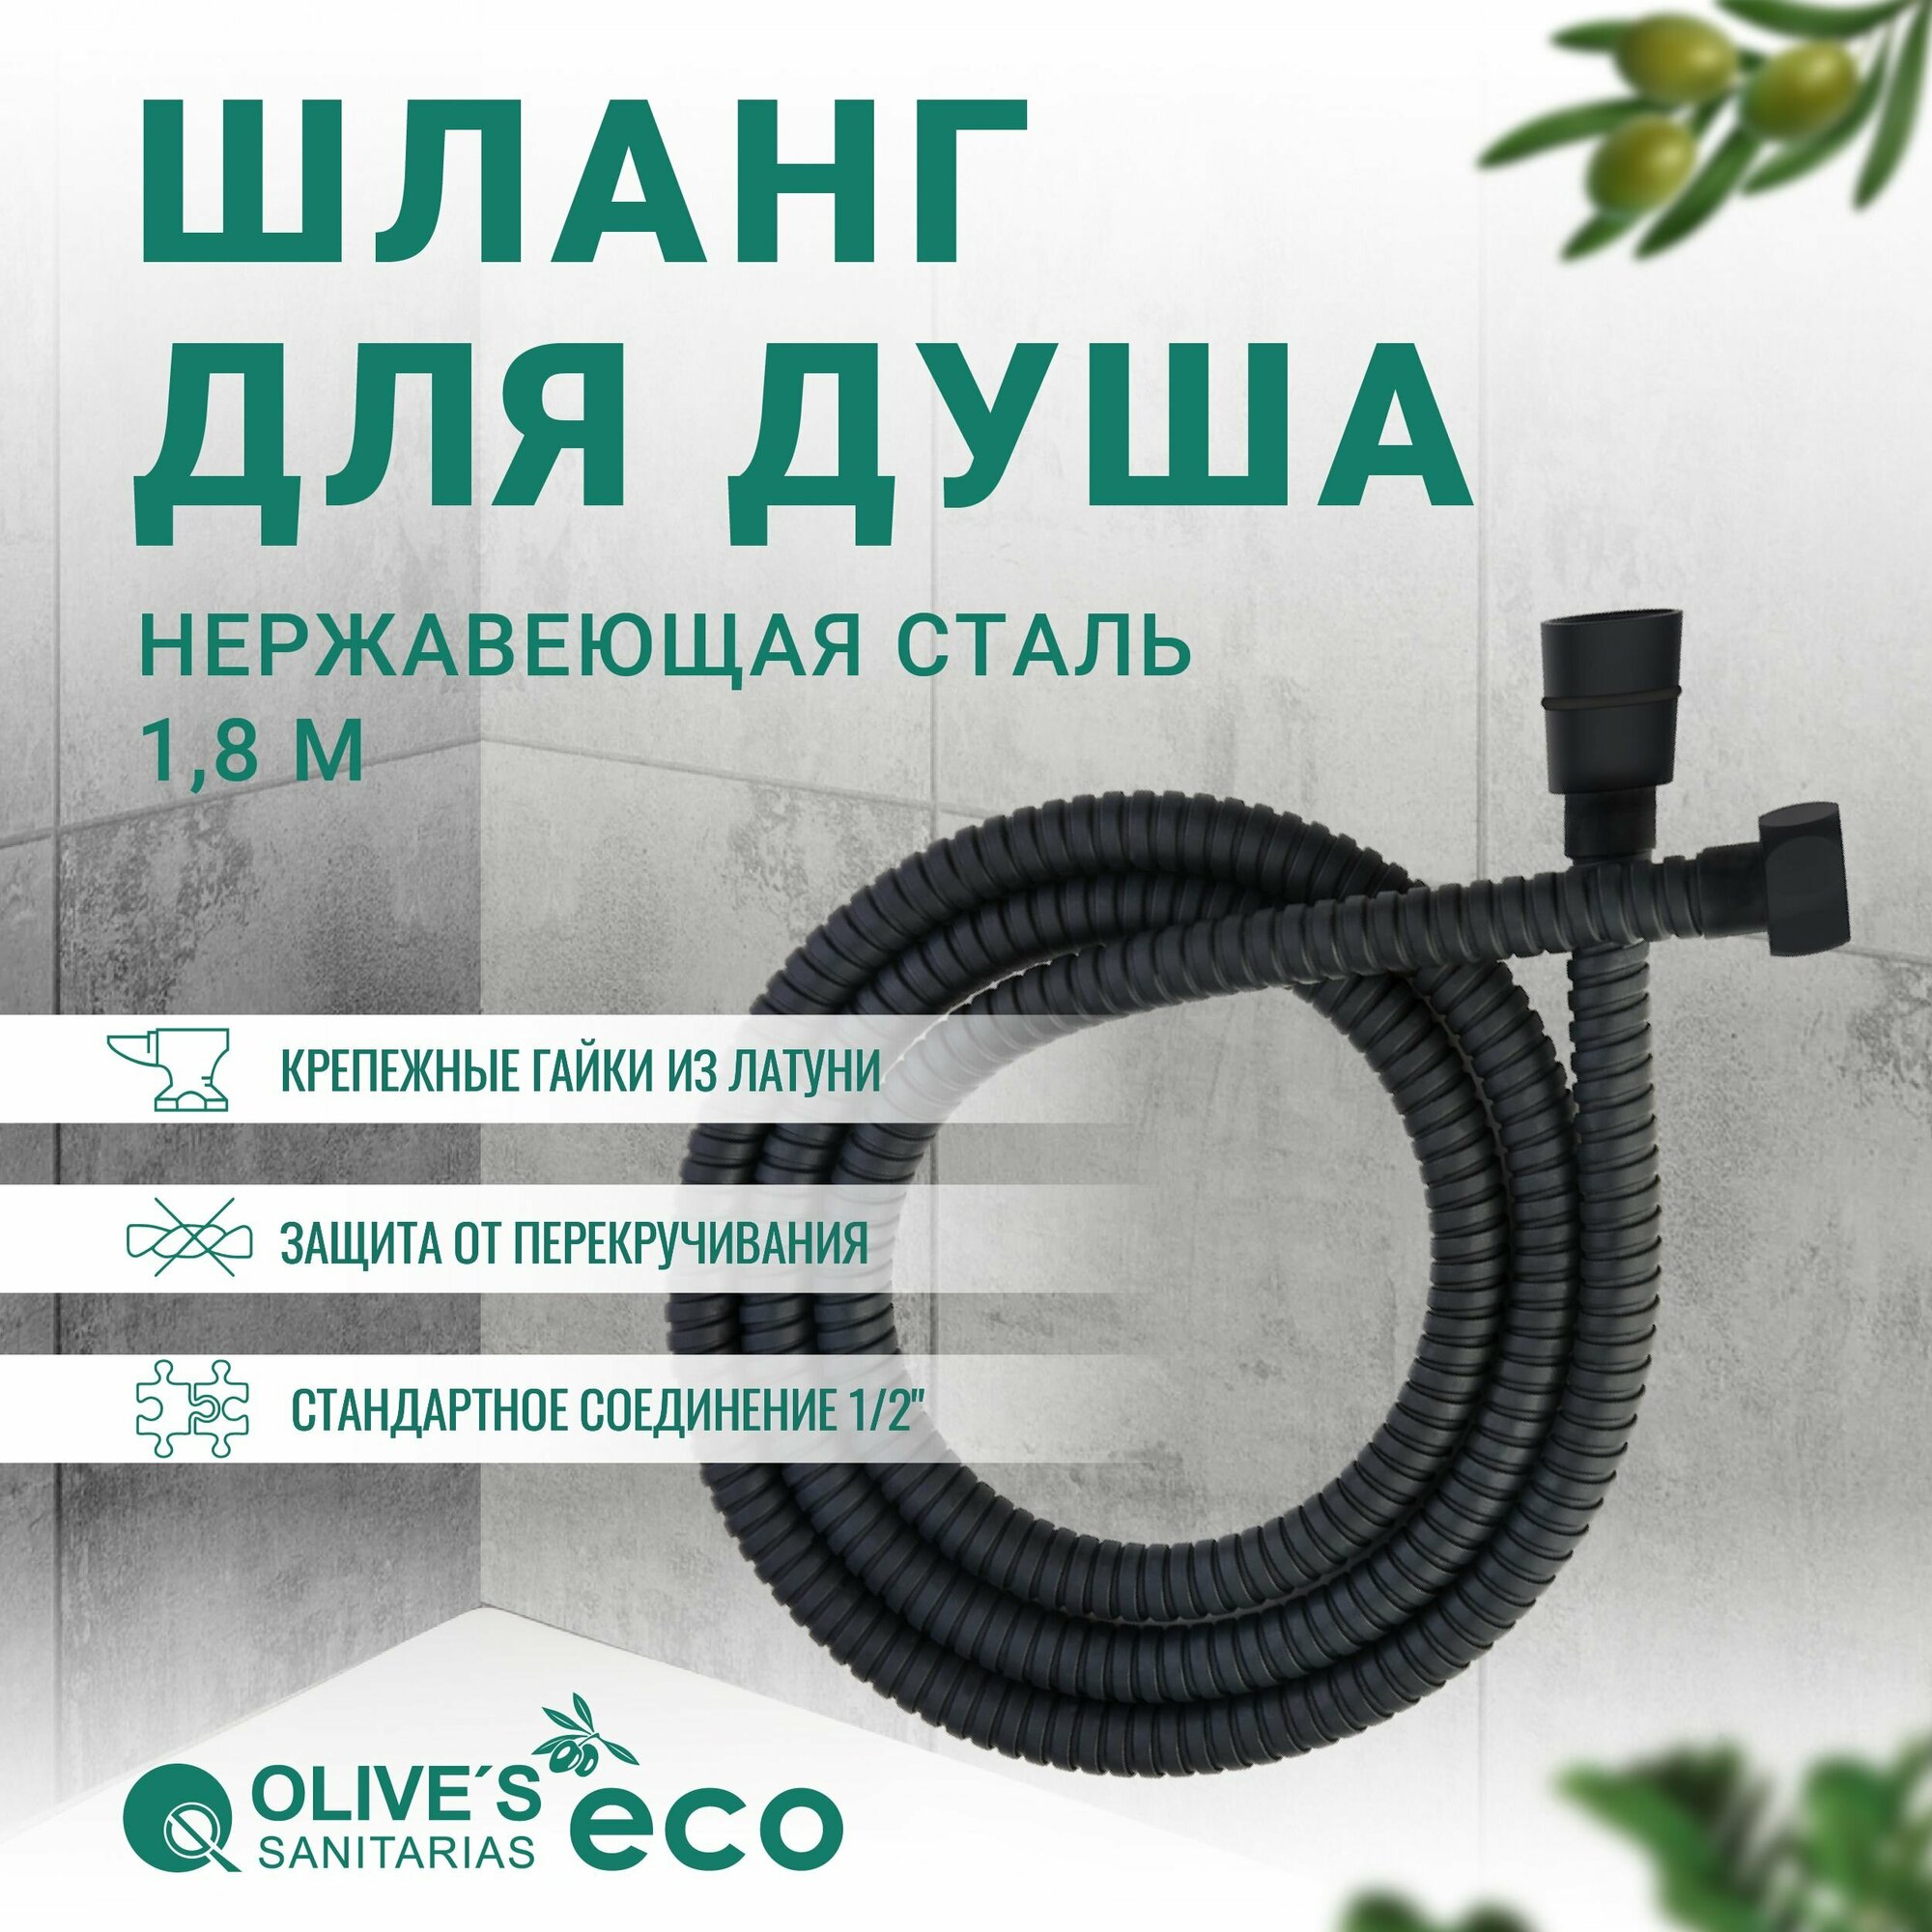 Шланг для душа черный оплетке из нержавеющей стали, 1,5 метра, EF0110B 1,5, Olive's ECO